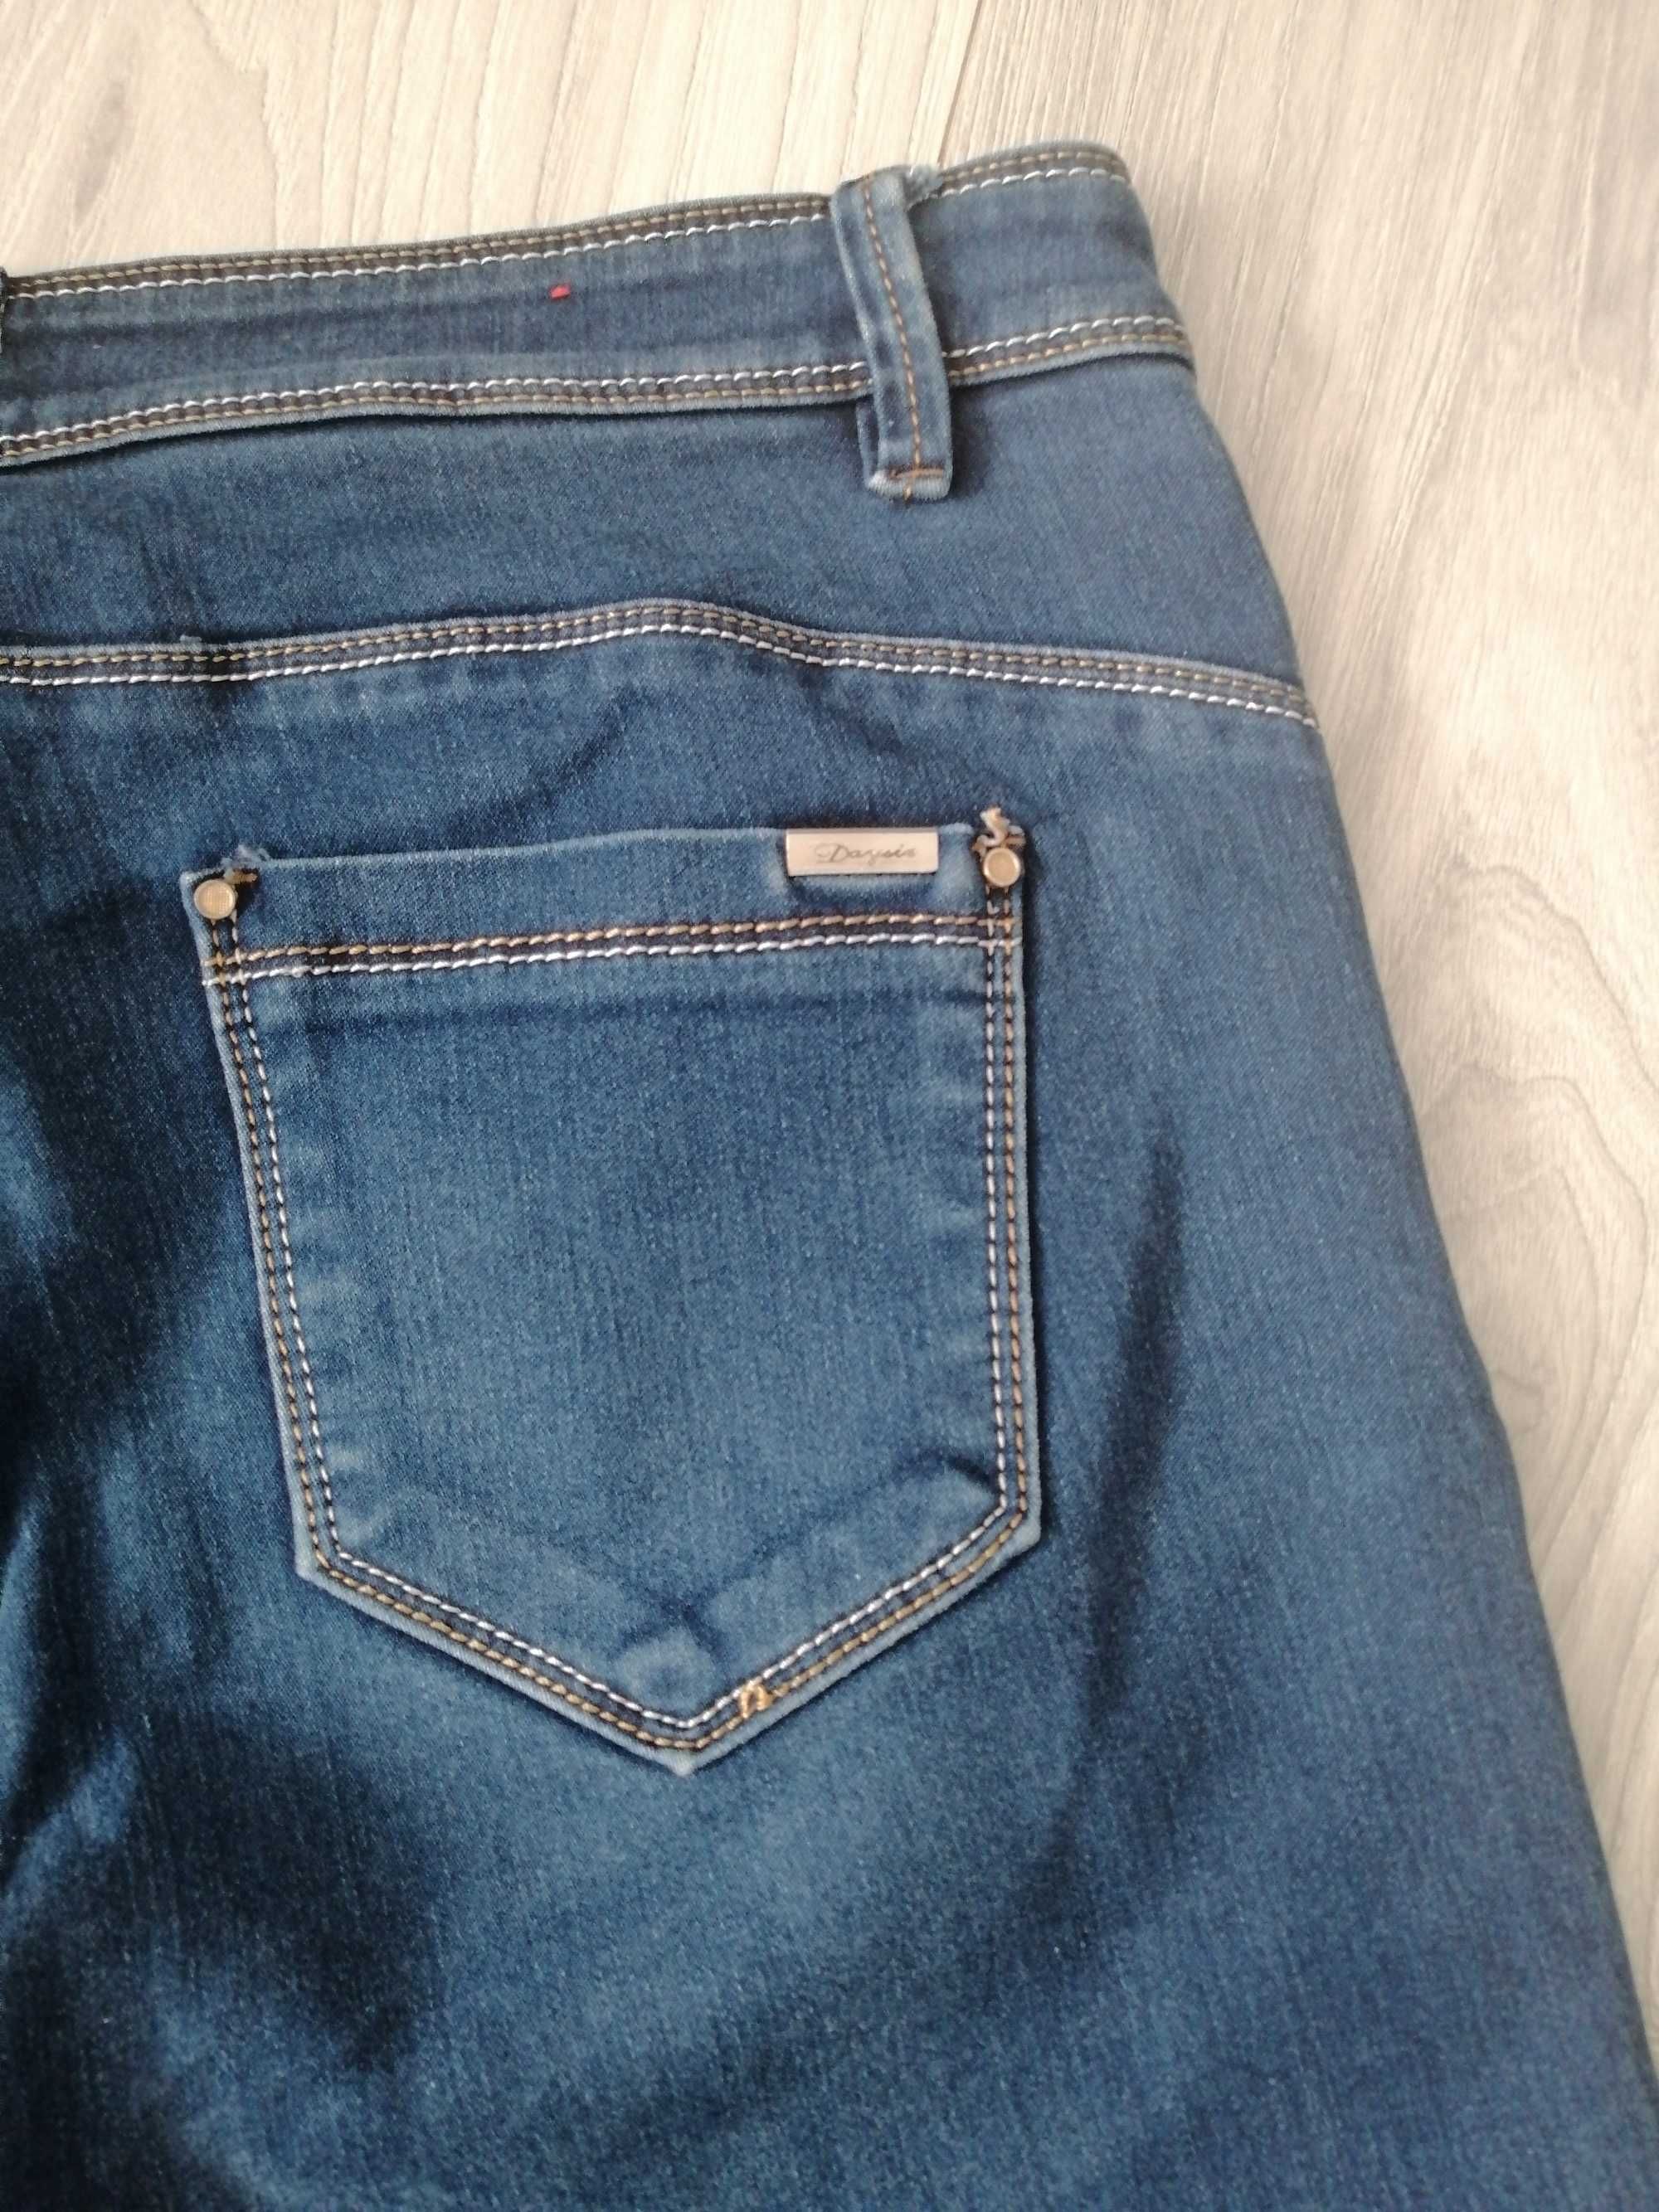 spodnie jeansowe firmy Daysie damskie w rozmiarze 44